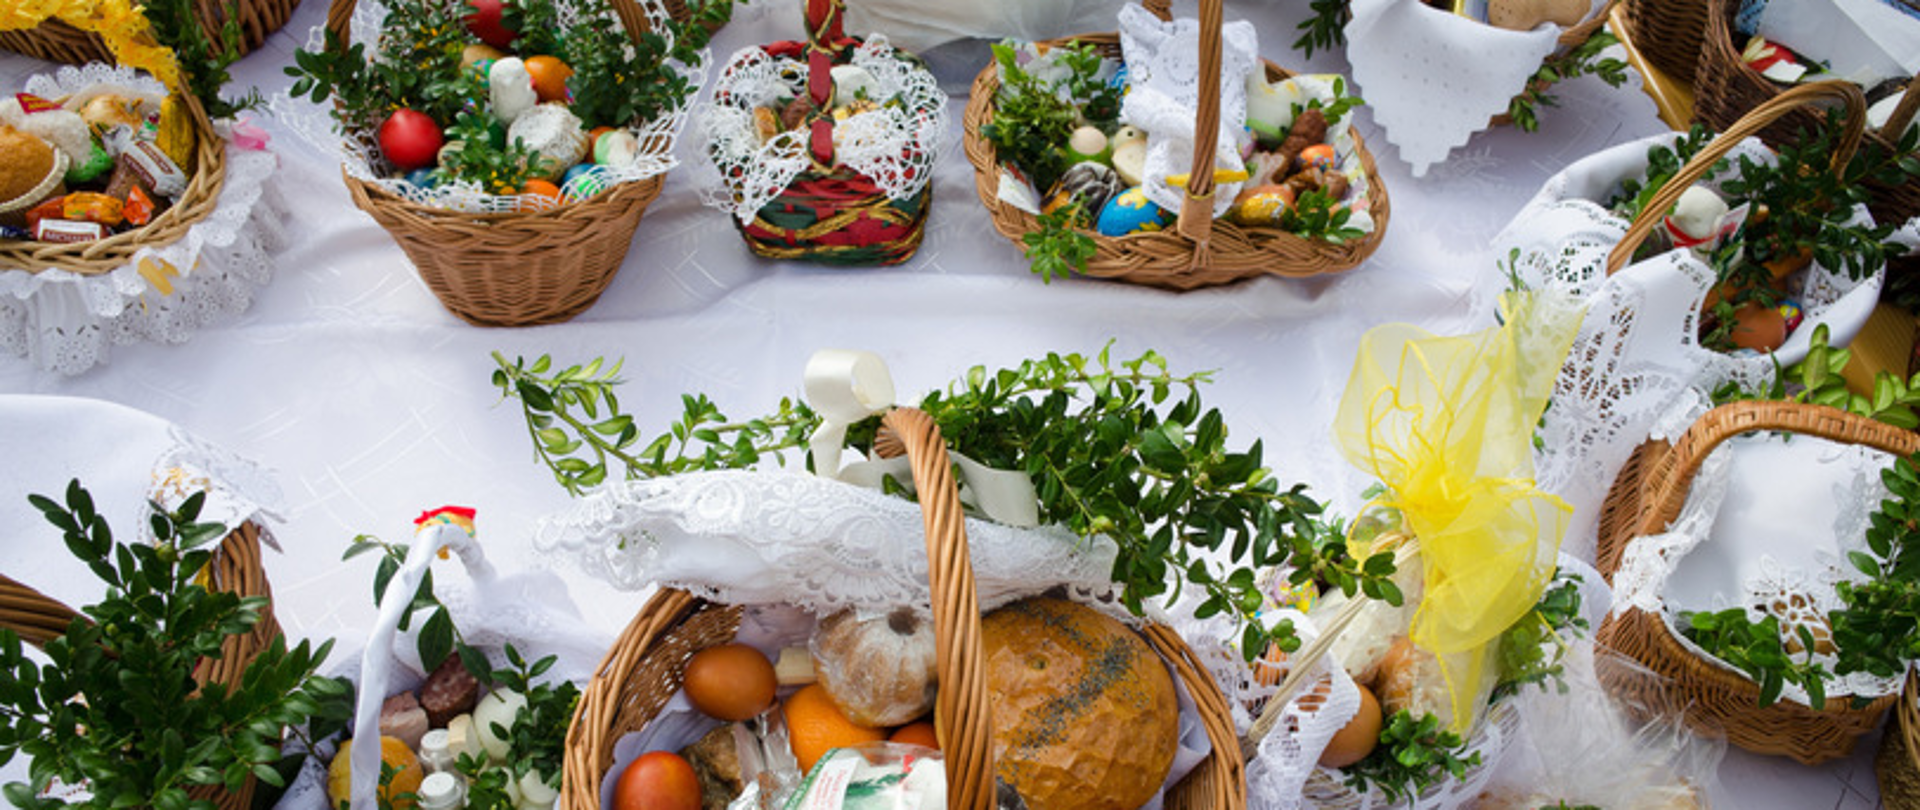 Na zdjęciu widoczny jest stół na którym ułożone są udekorowane koszyczki świąteczne z produktami do spożycia podczas Świąt.